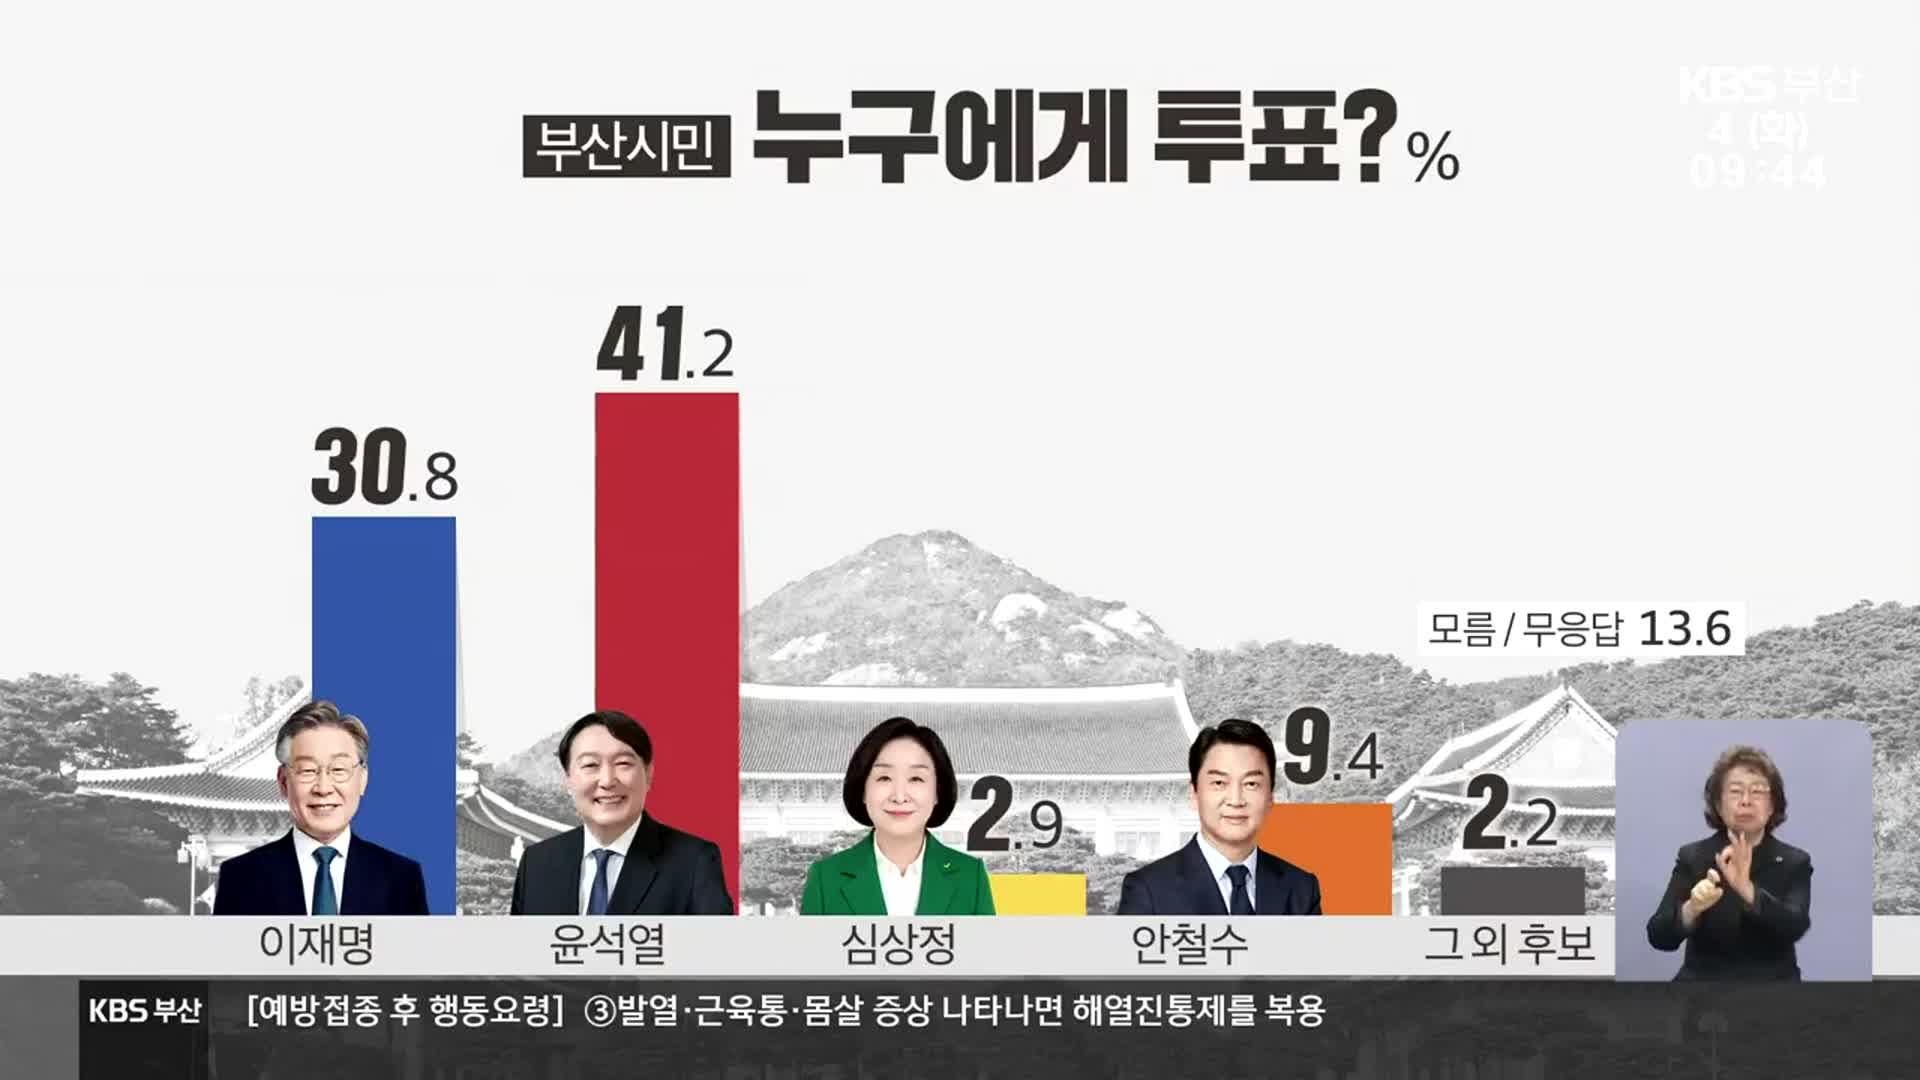 [부산 여론조사]① “이재명 30.8% 대 윤석열 41.2%” 부산 민심은?